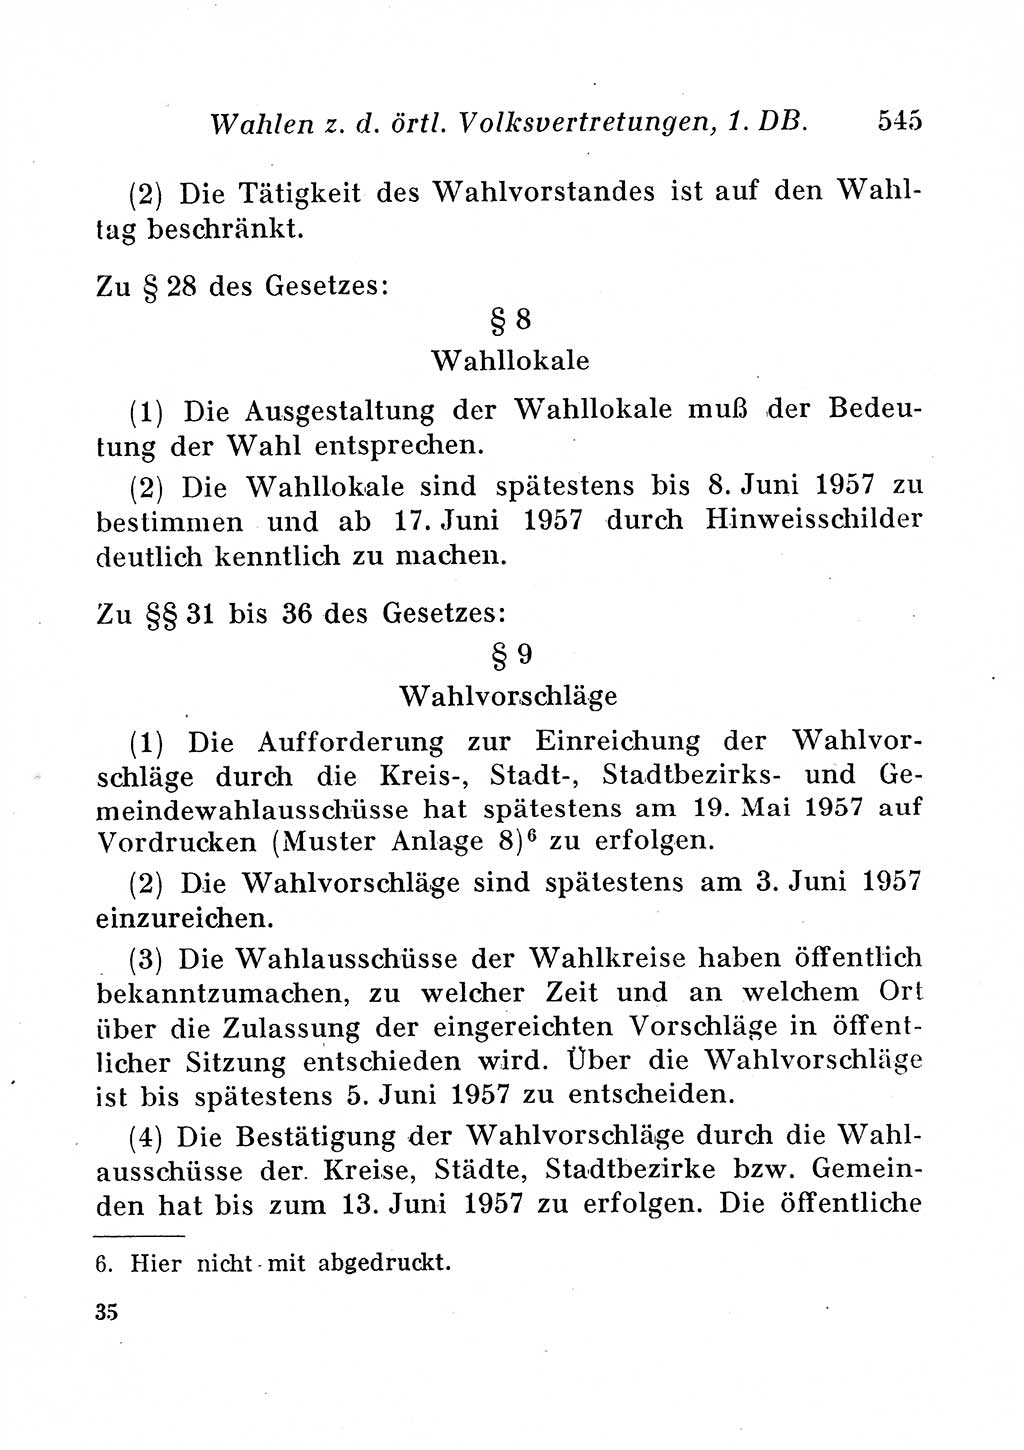 Staats- und verwaltungsrechtliche Gesetze der Deutschen Demokratischen Republik (DDR) 1958, Seite 545 (StVerwR Ges. DDR 1958, S. 545)